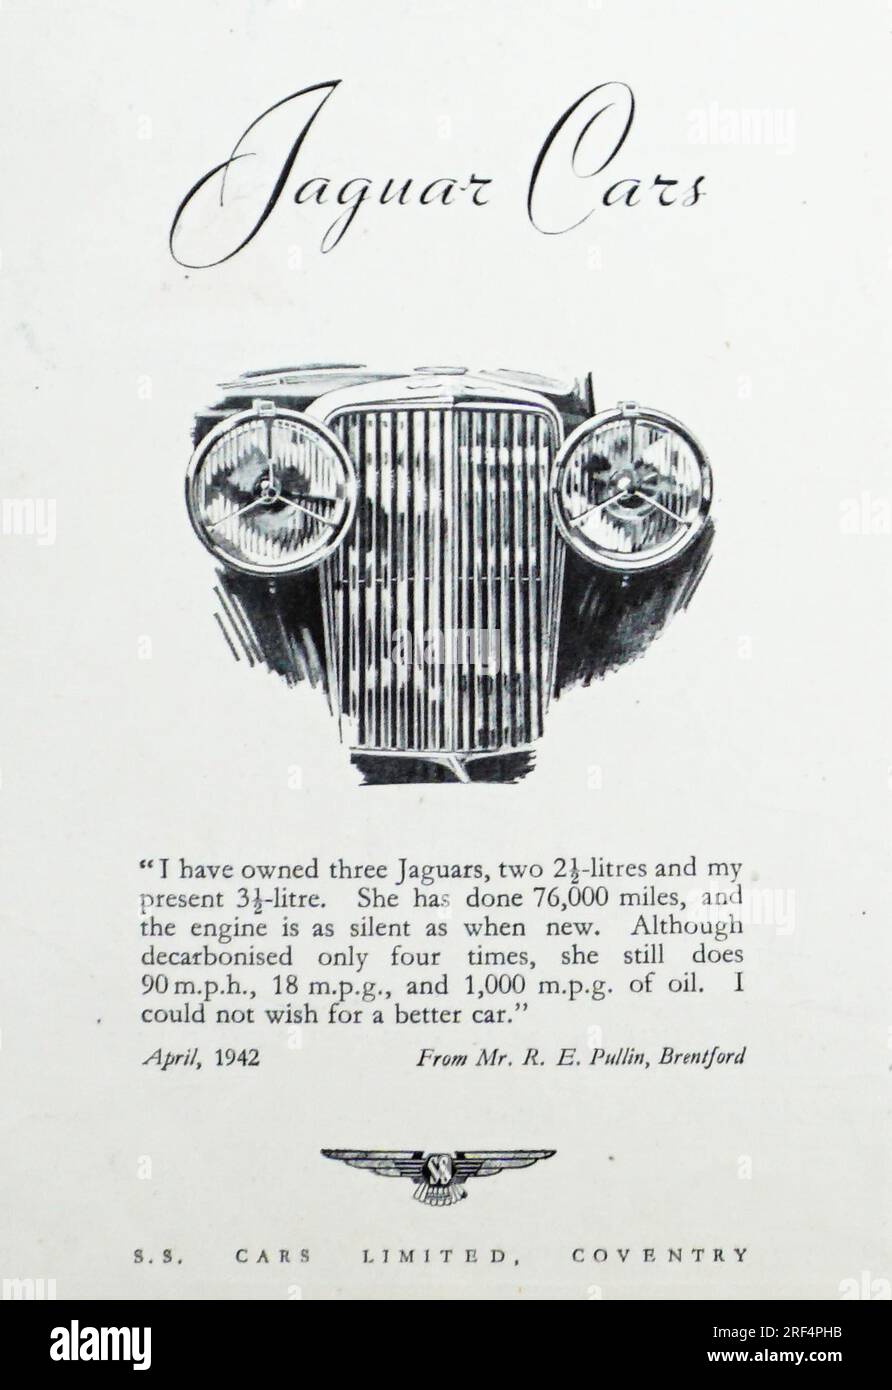 Une publicité de 1942 pour Jaguar Cars. La publicité a été insérée par S.S. Cars, Coventry, qui en 1945 a changé son nom en Jaguar Cars. La publicité présente un témoignage d'un M. Pullin, Brentford qui conduit une Jaguar car de 3 1/2 litres qui fait 90 mph, 18 mpg, et qui «ne pouvait pas souhaiter, pour une meilleure voiture» Banque D'Images